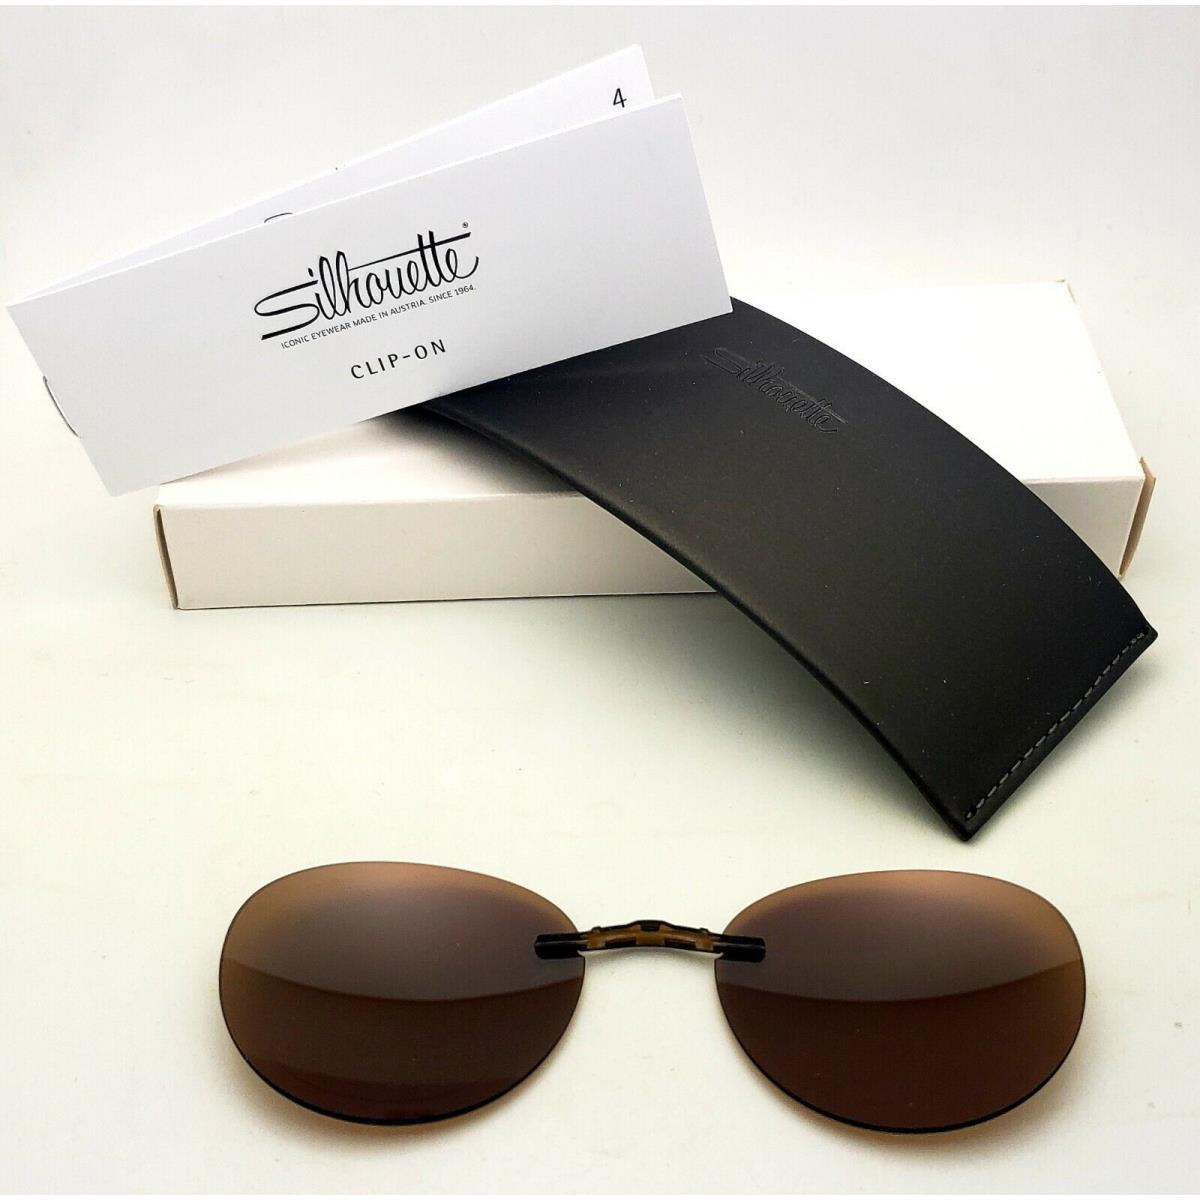 Silhouette Eyeglasses 5521 EP 5065 Titan Next Generation Brown Polarized Clip-on